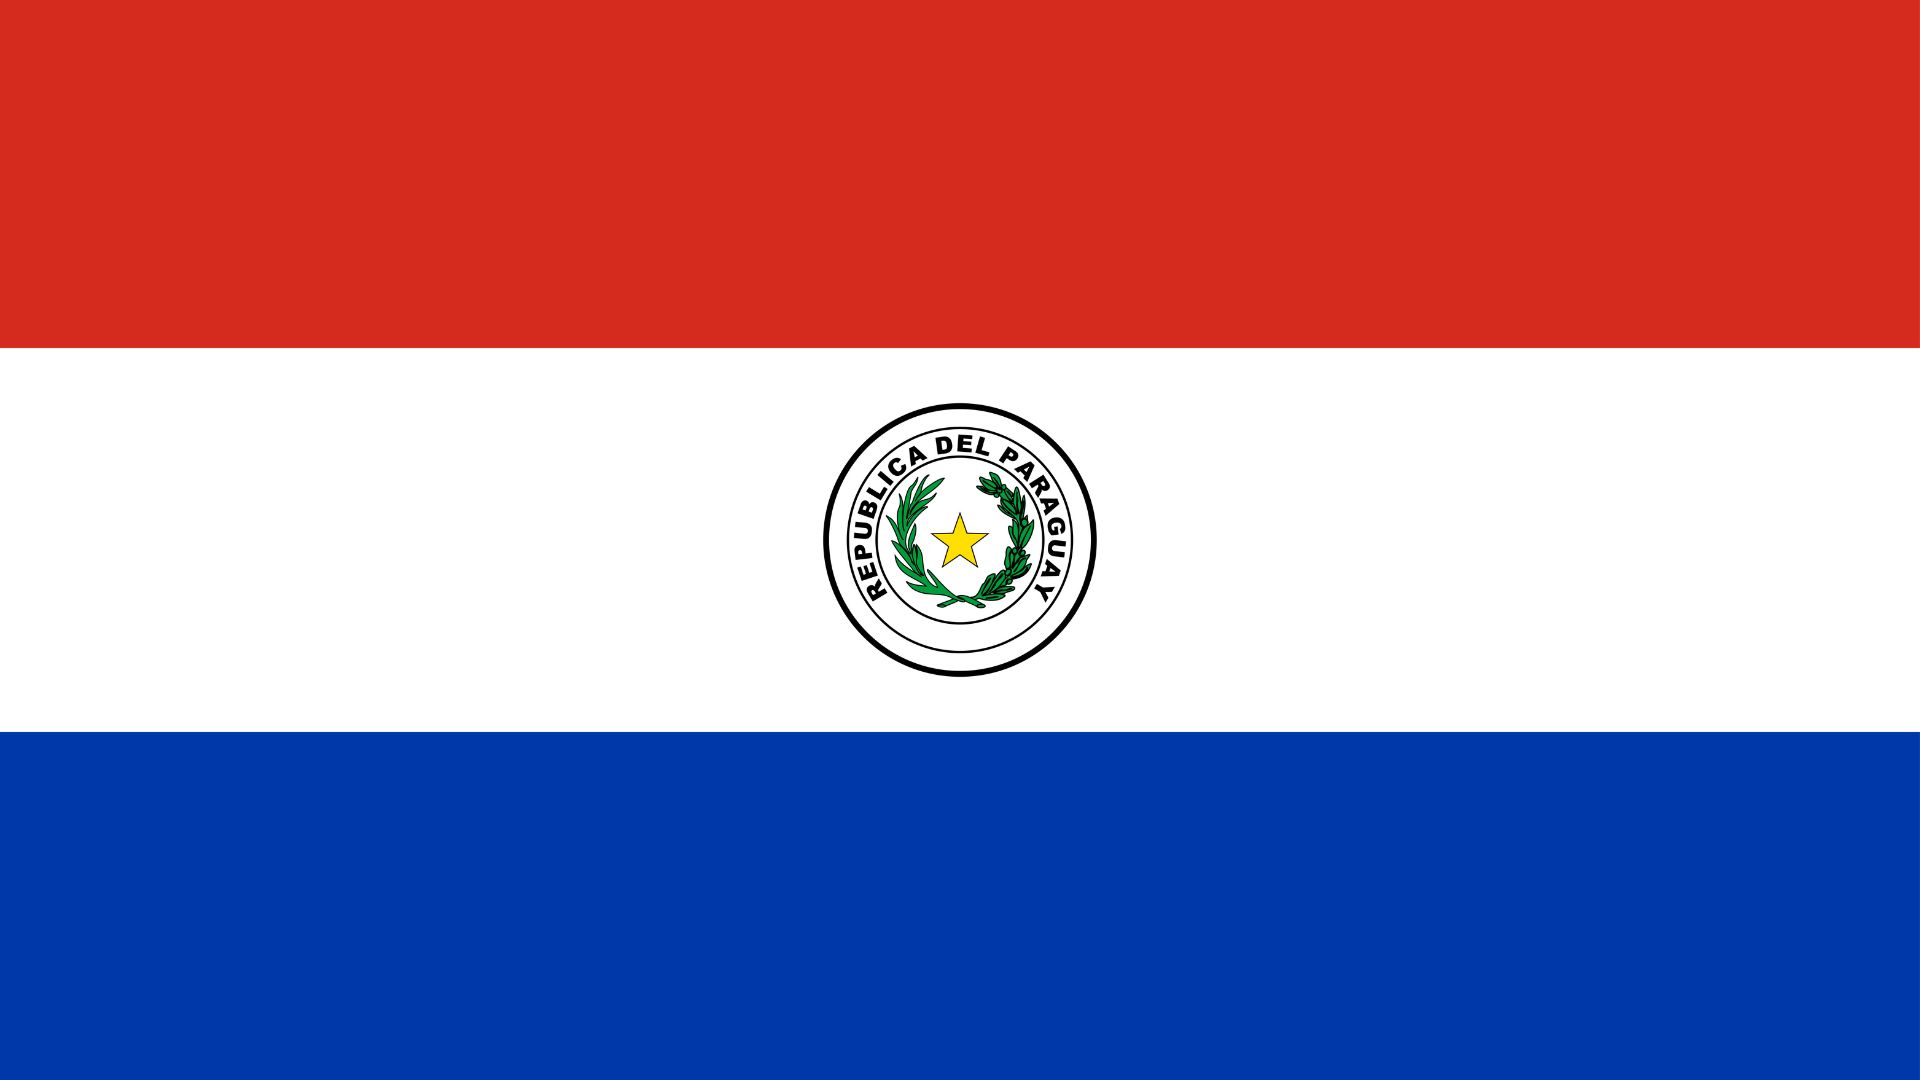 A bandeira do Paraguai tem três listras coloridas em vermelho, branco e azul. As cores foram influenciadas pela tricolor francesa, que é um símbolo de libertação.